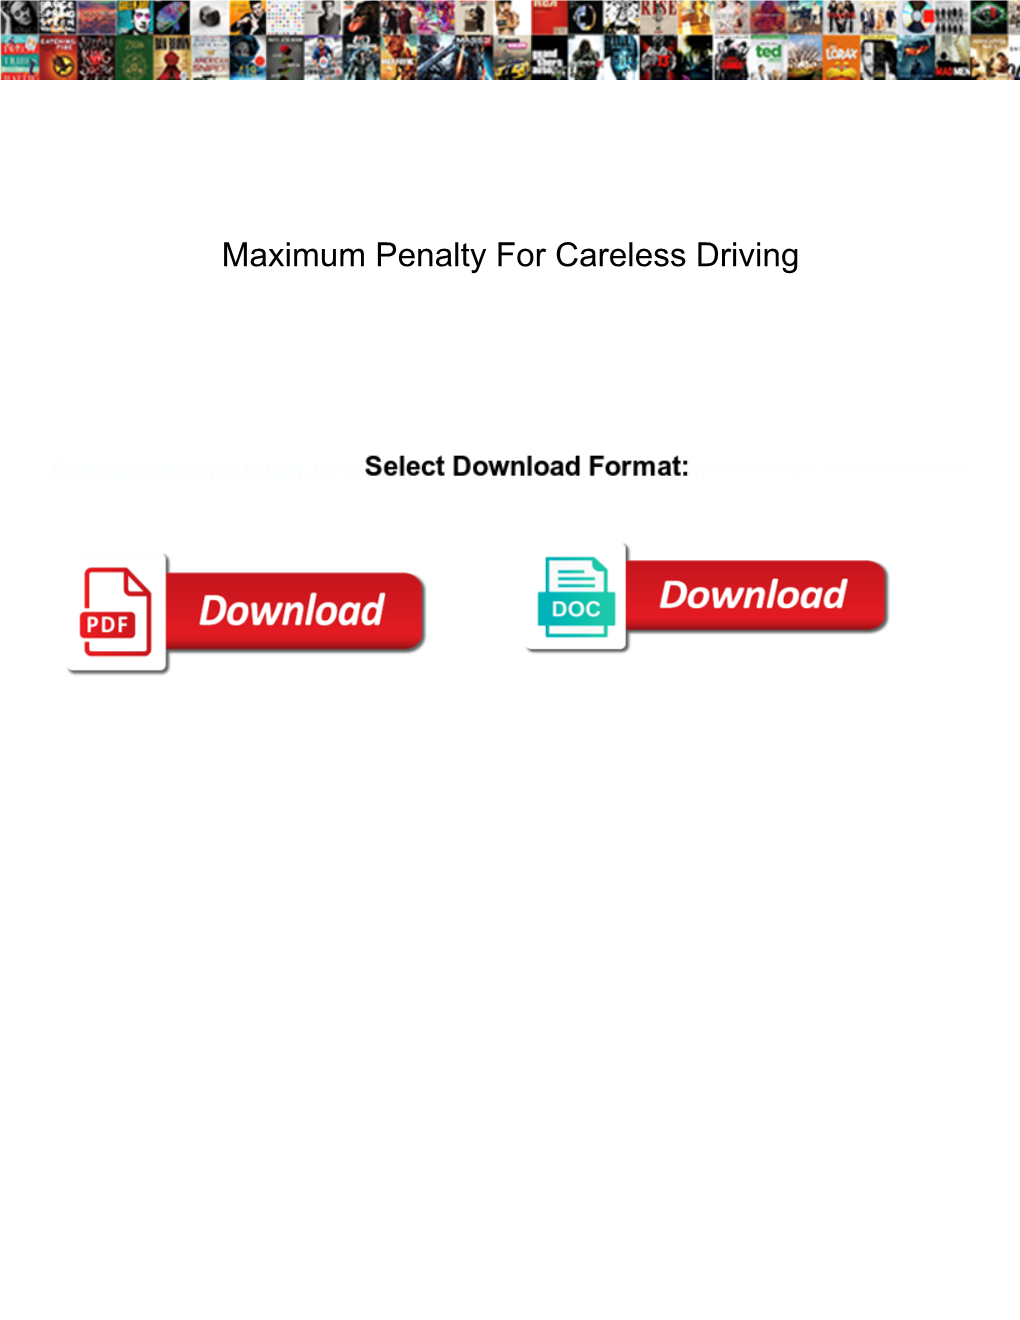 Maximum Penalty for Careless Driving